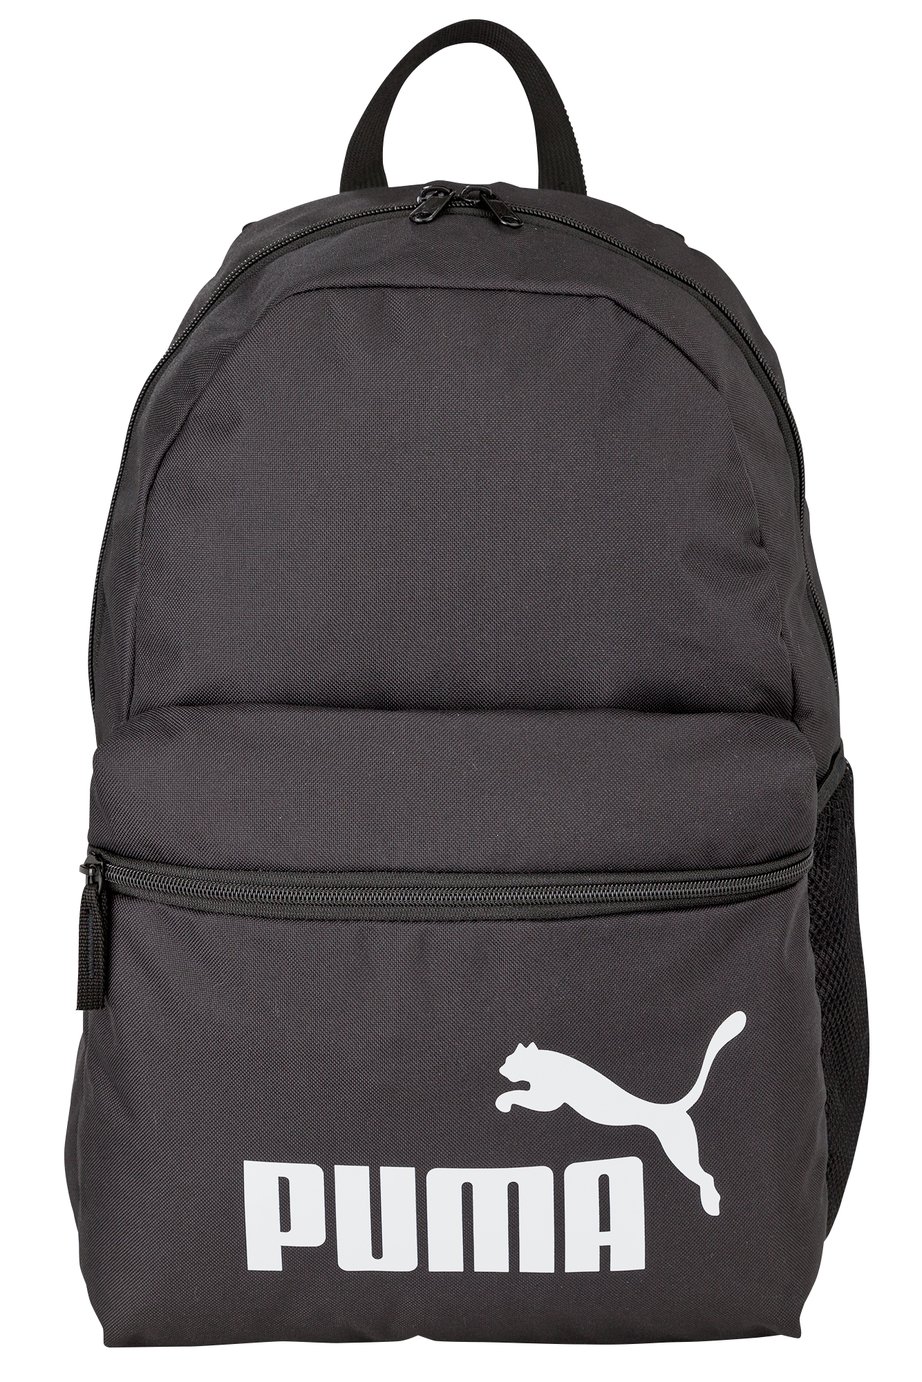 black and white puma backpack